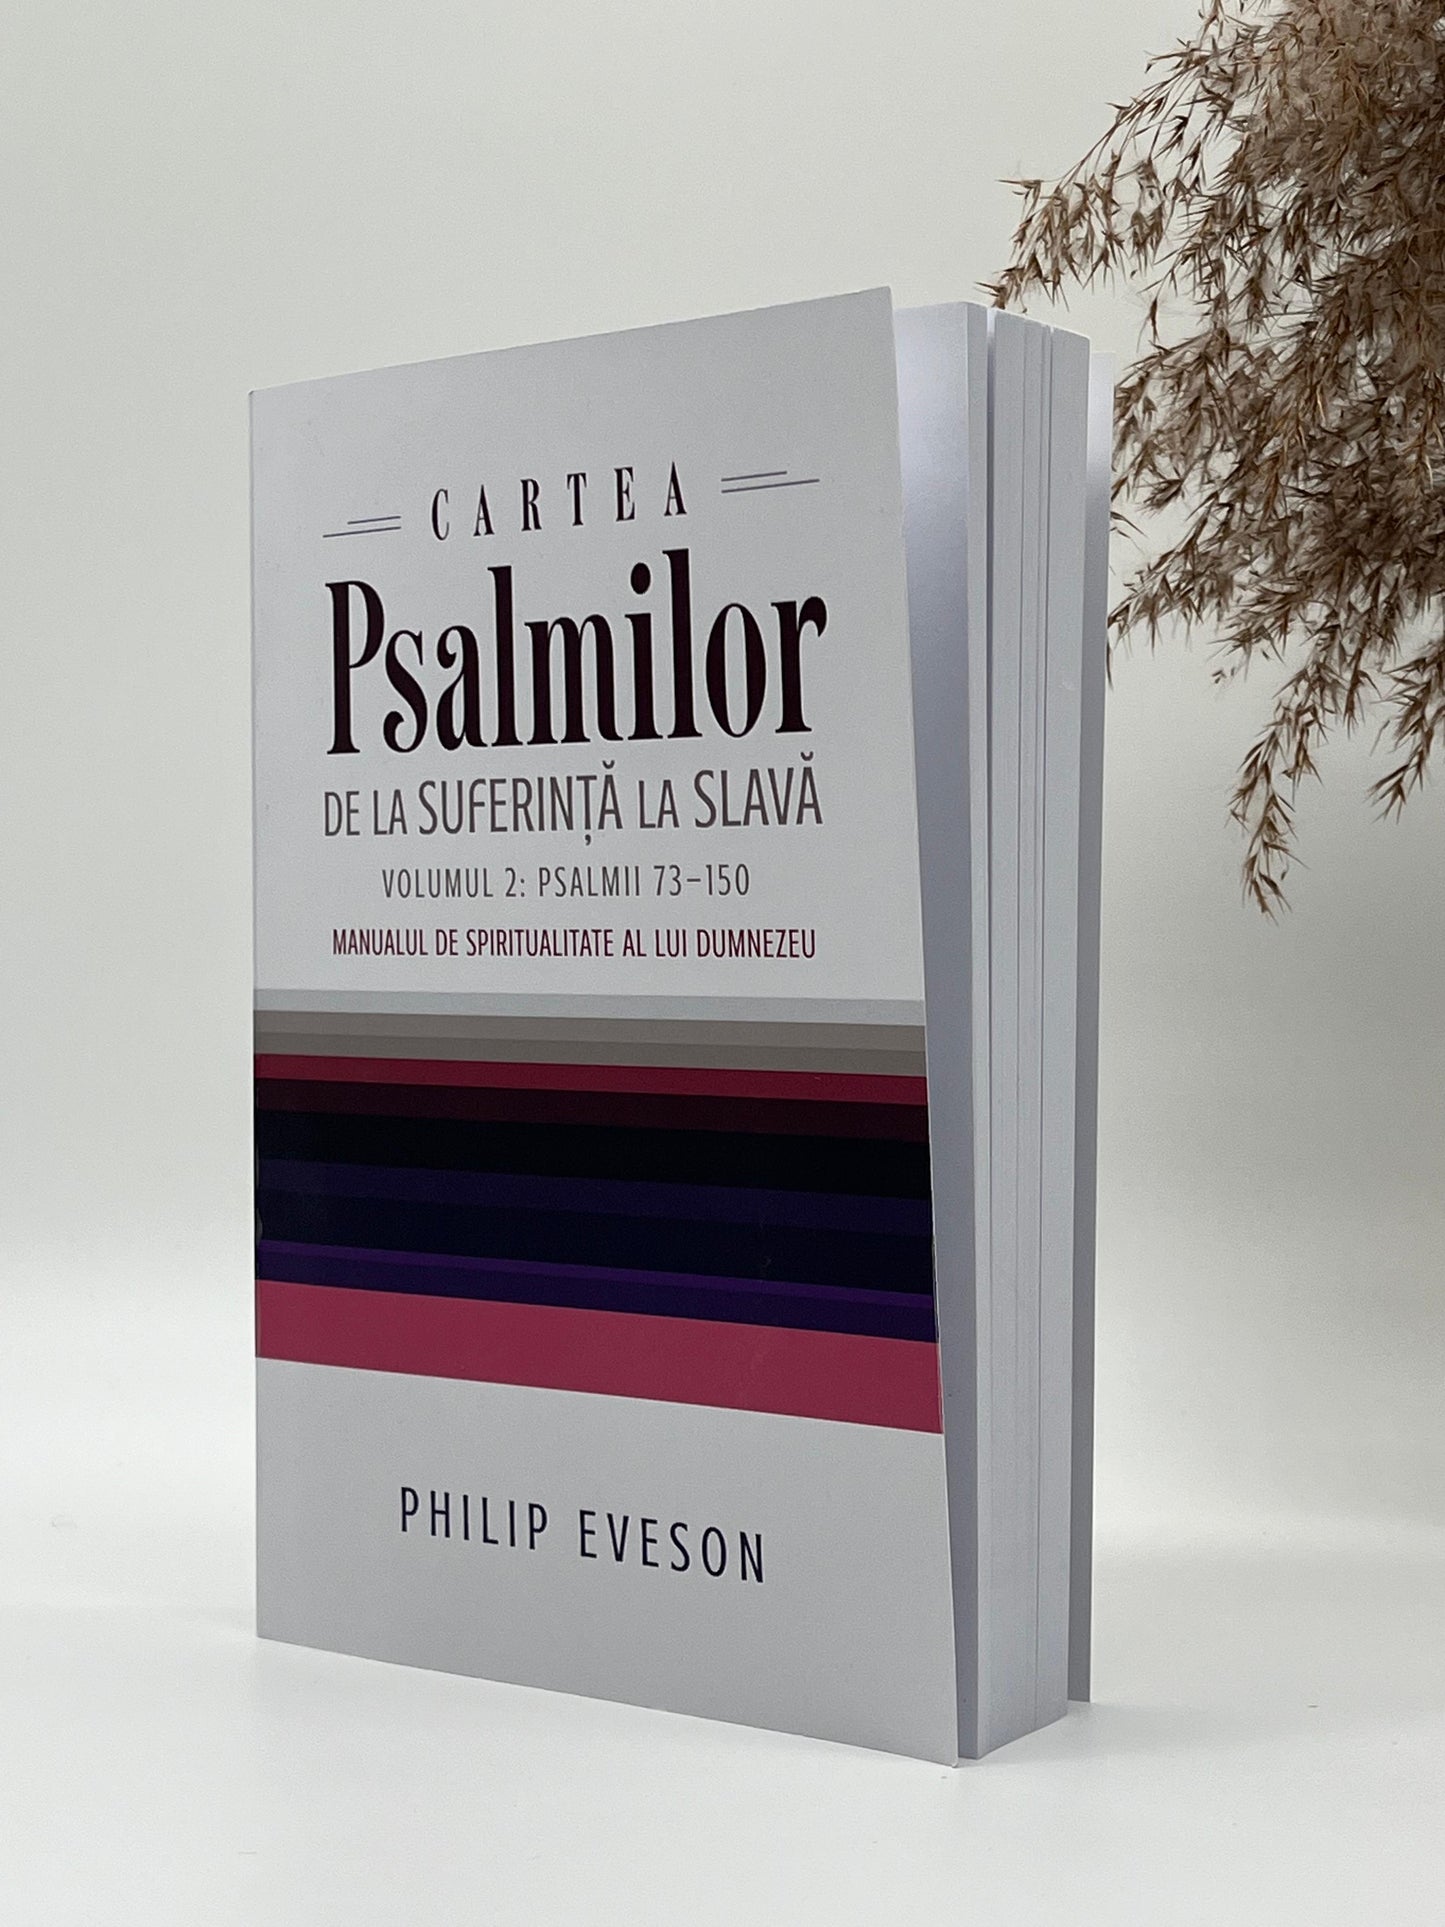 Cartea Psalmilor. De la suferință la slava. Volumul 2: Psalmii 73-150. Manualul de spiritualitate al lui Dumnezeu
Philip Eveson